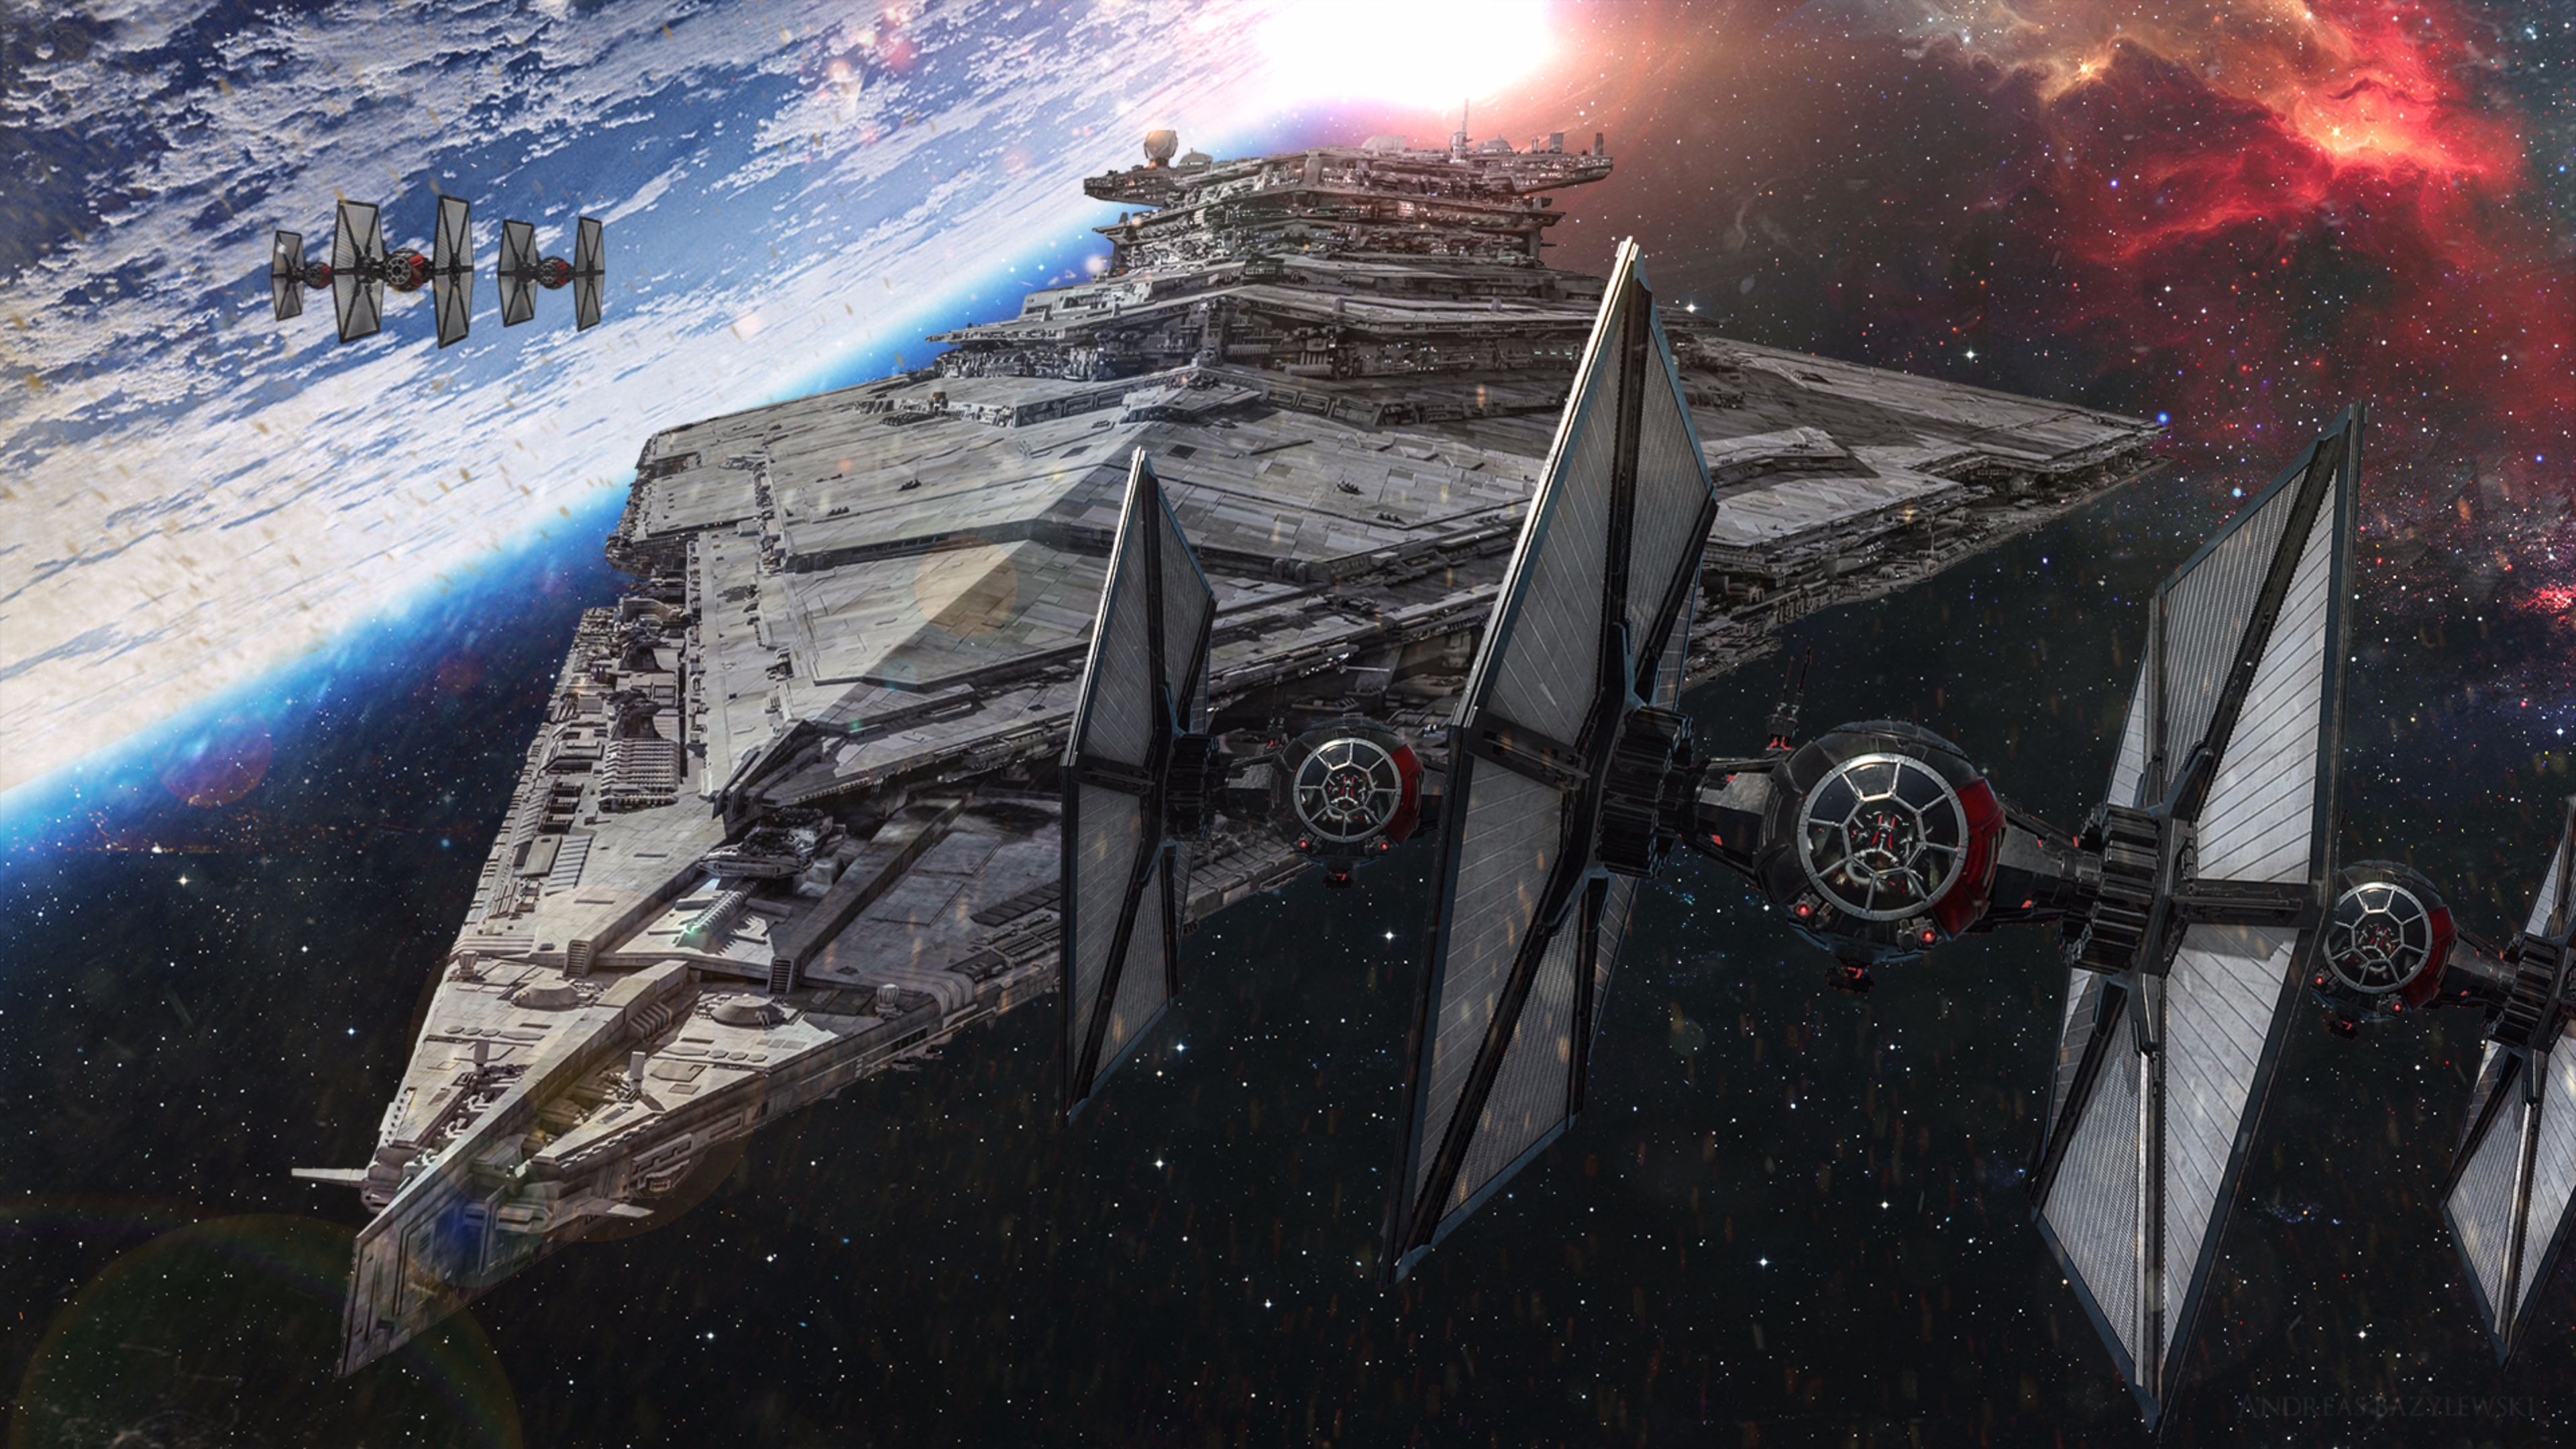 Inspirational Star Wars The Force Awakens 4k Wallpaper Jpg